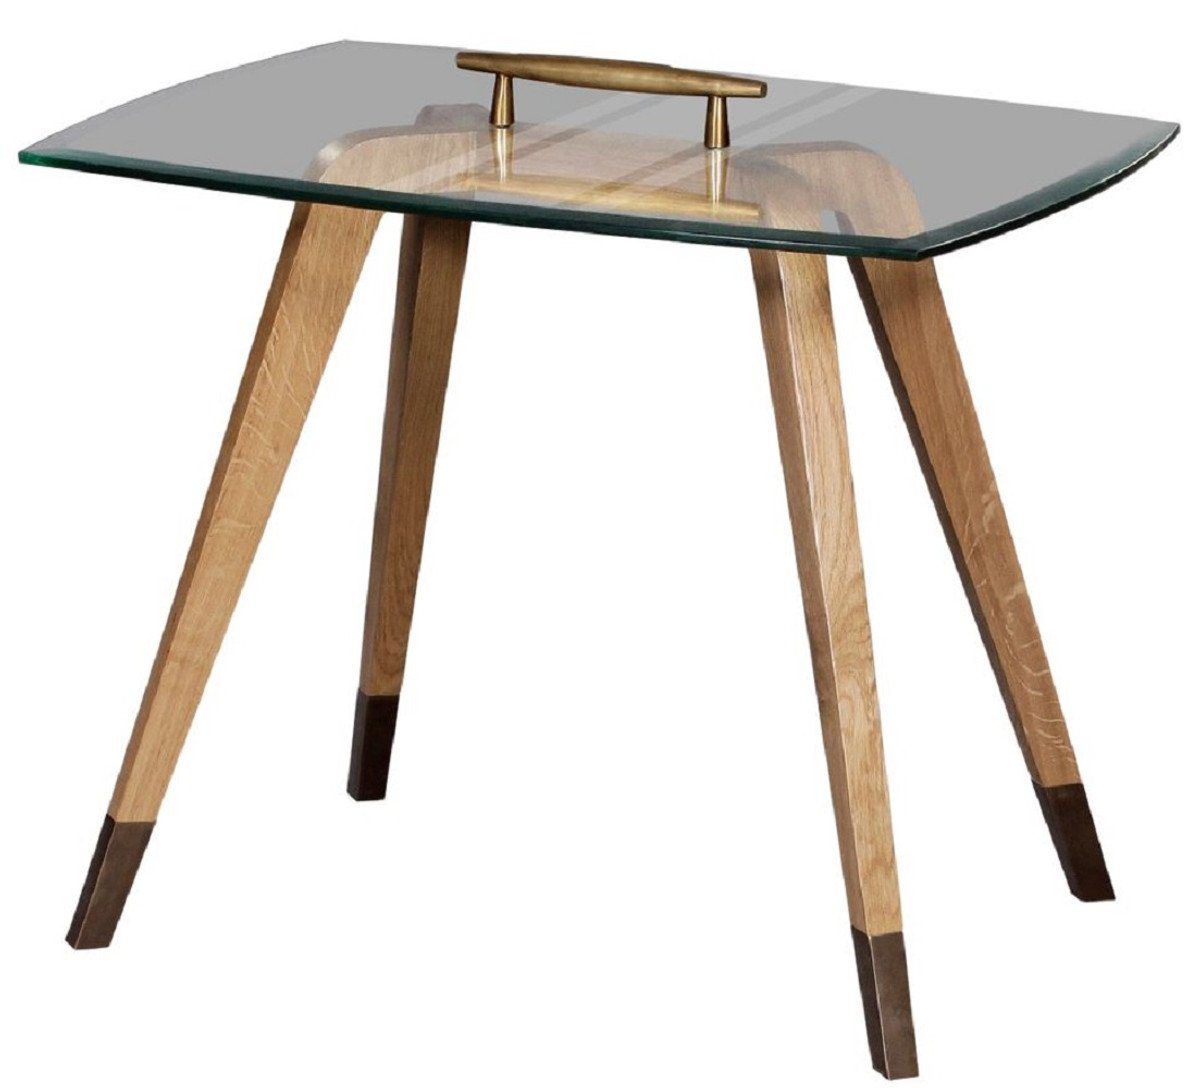 Casa Padrino Beistelltisch Luxus Beistelltisch Naturfarben / Braun / Messingfarben 60 x 40 x H. 53 cm - Moderner Tisch mit Glasplatte und Tragegriff - Möbel - Luxus Kollektion von Casa Padrino